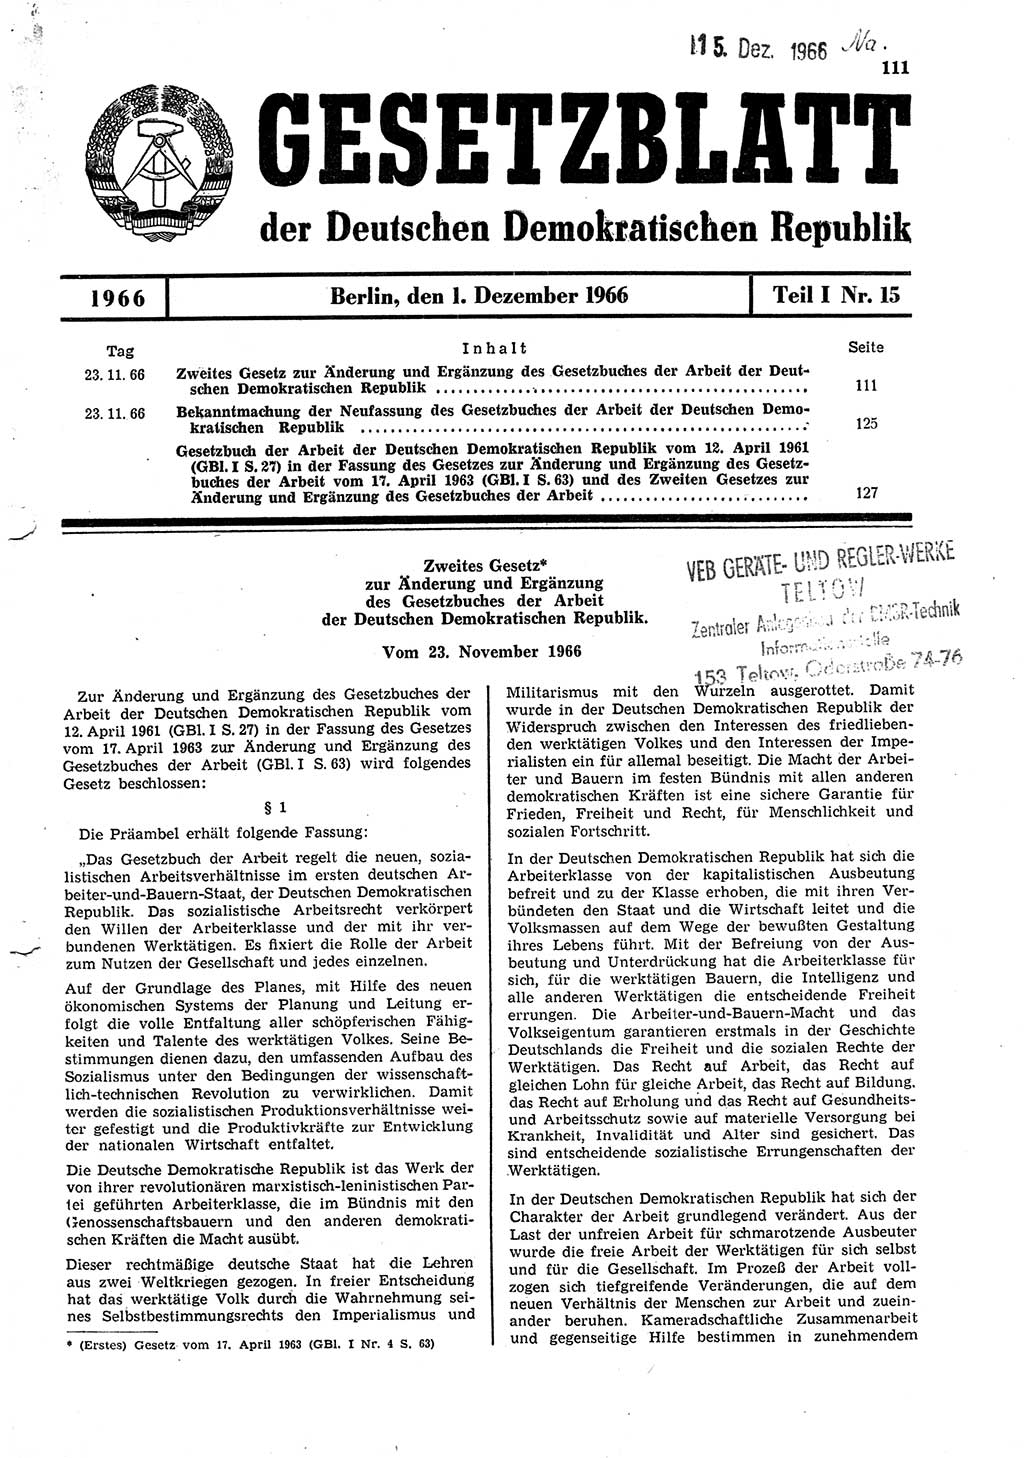 Gesetzblatt (GBl.) der Deutschen Demokratischen Republik (DDR) Teil Ⅰ 1966, Seite 111 (GBl. DDR Ⅰ 1966, S. 111)